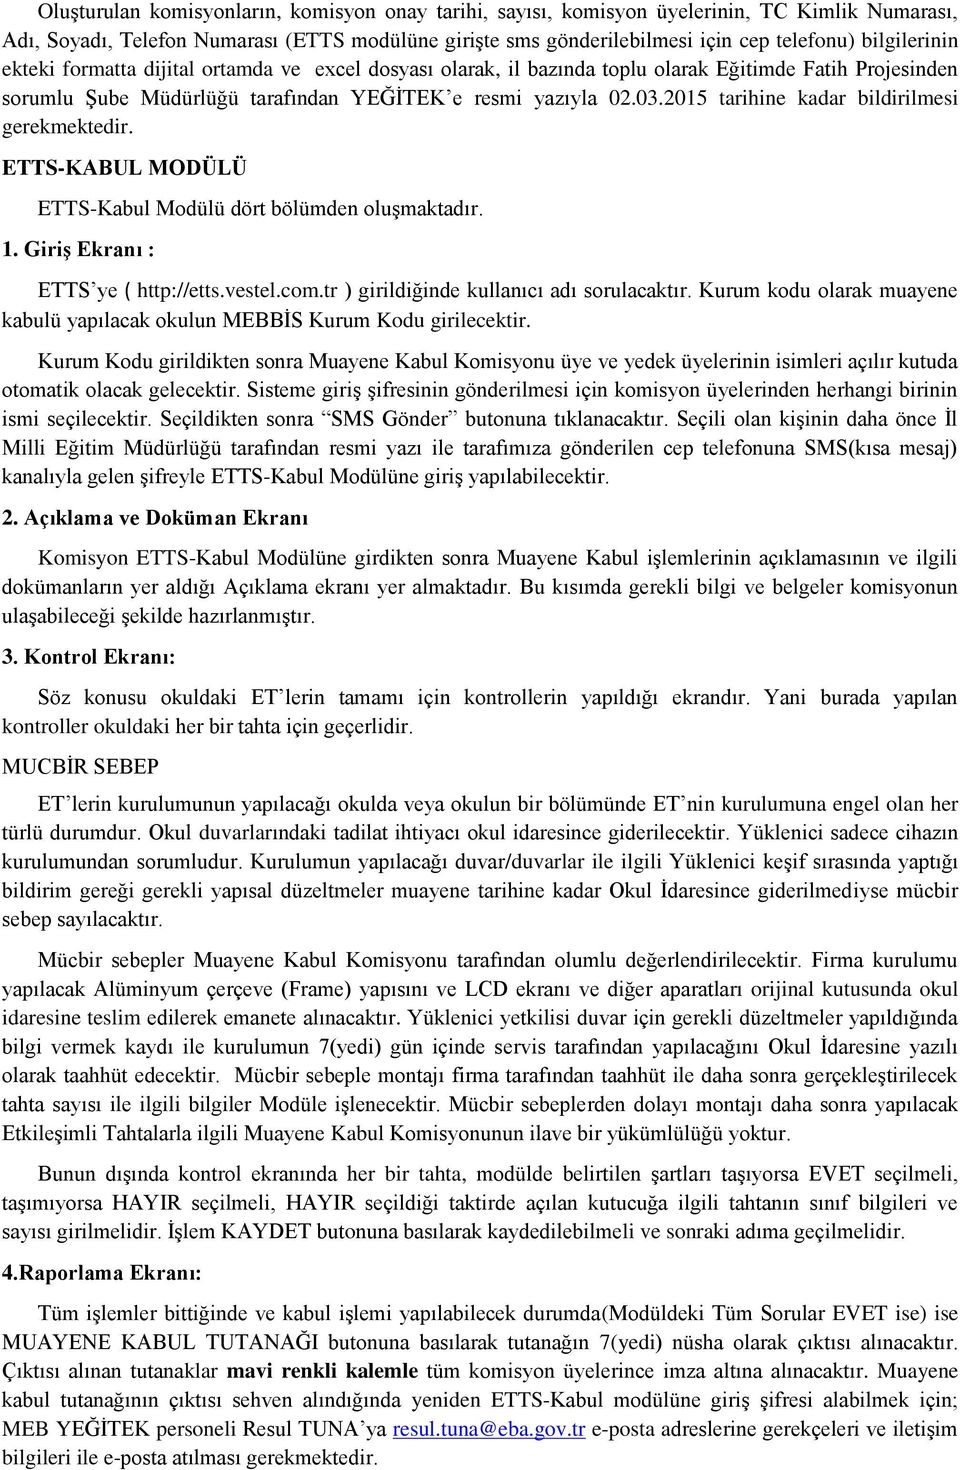 2015 tarihine kadar bildirilmesi gerekmektedir. ETTS-KABUL MODÜLÜ ETTS-Kabul Modülü dört bölümden oluşmaktadır. 1. Giriş Ekranı : ETTS ye ( http://etts.vestel.com.